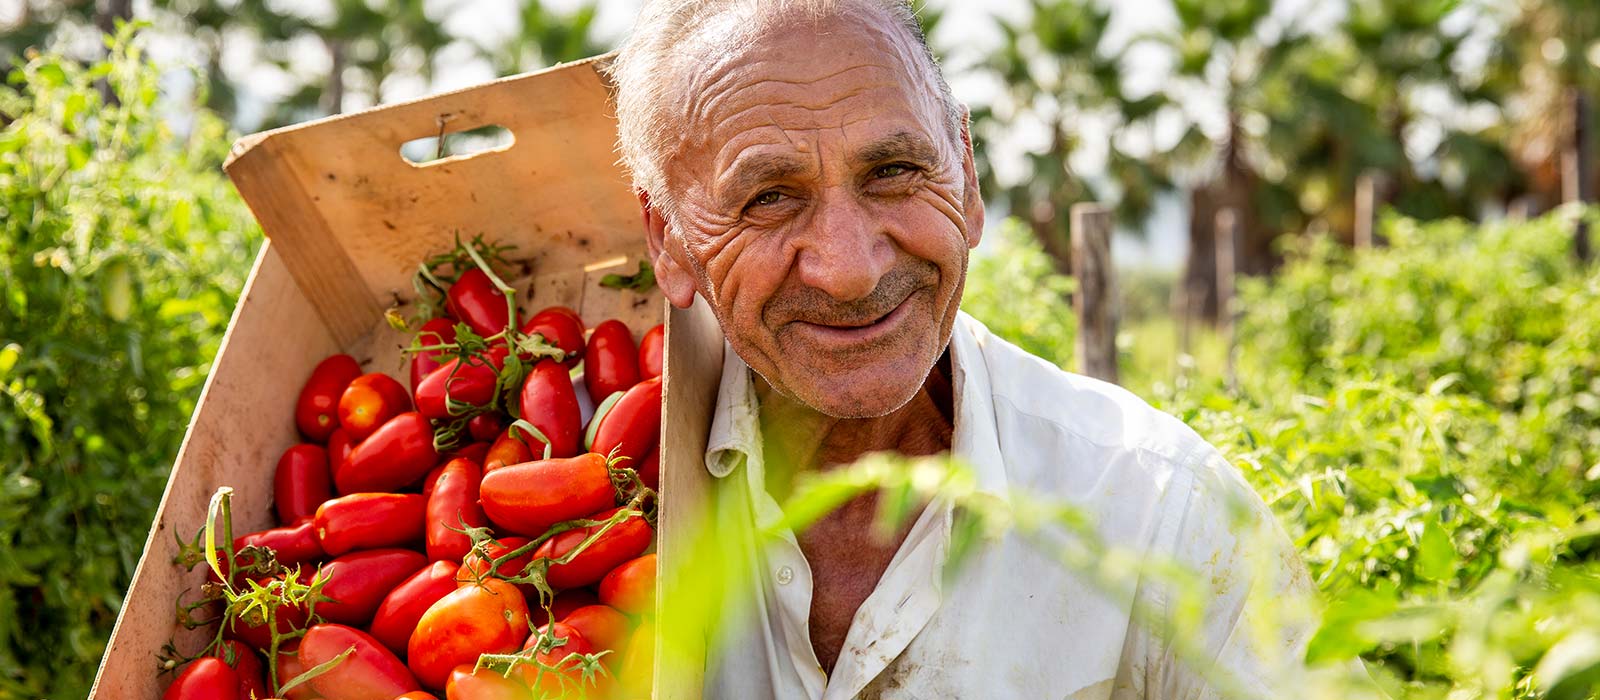 Tomates cerises - 100% italiennes